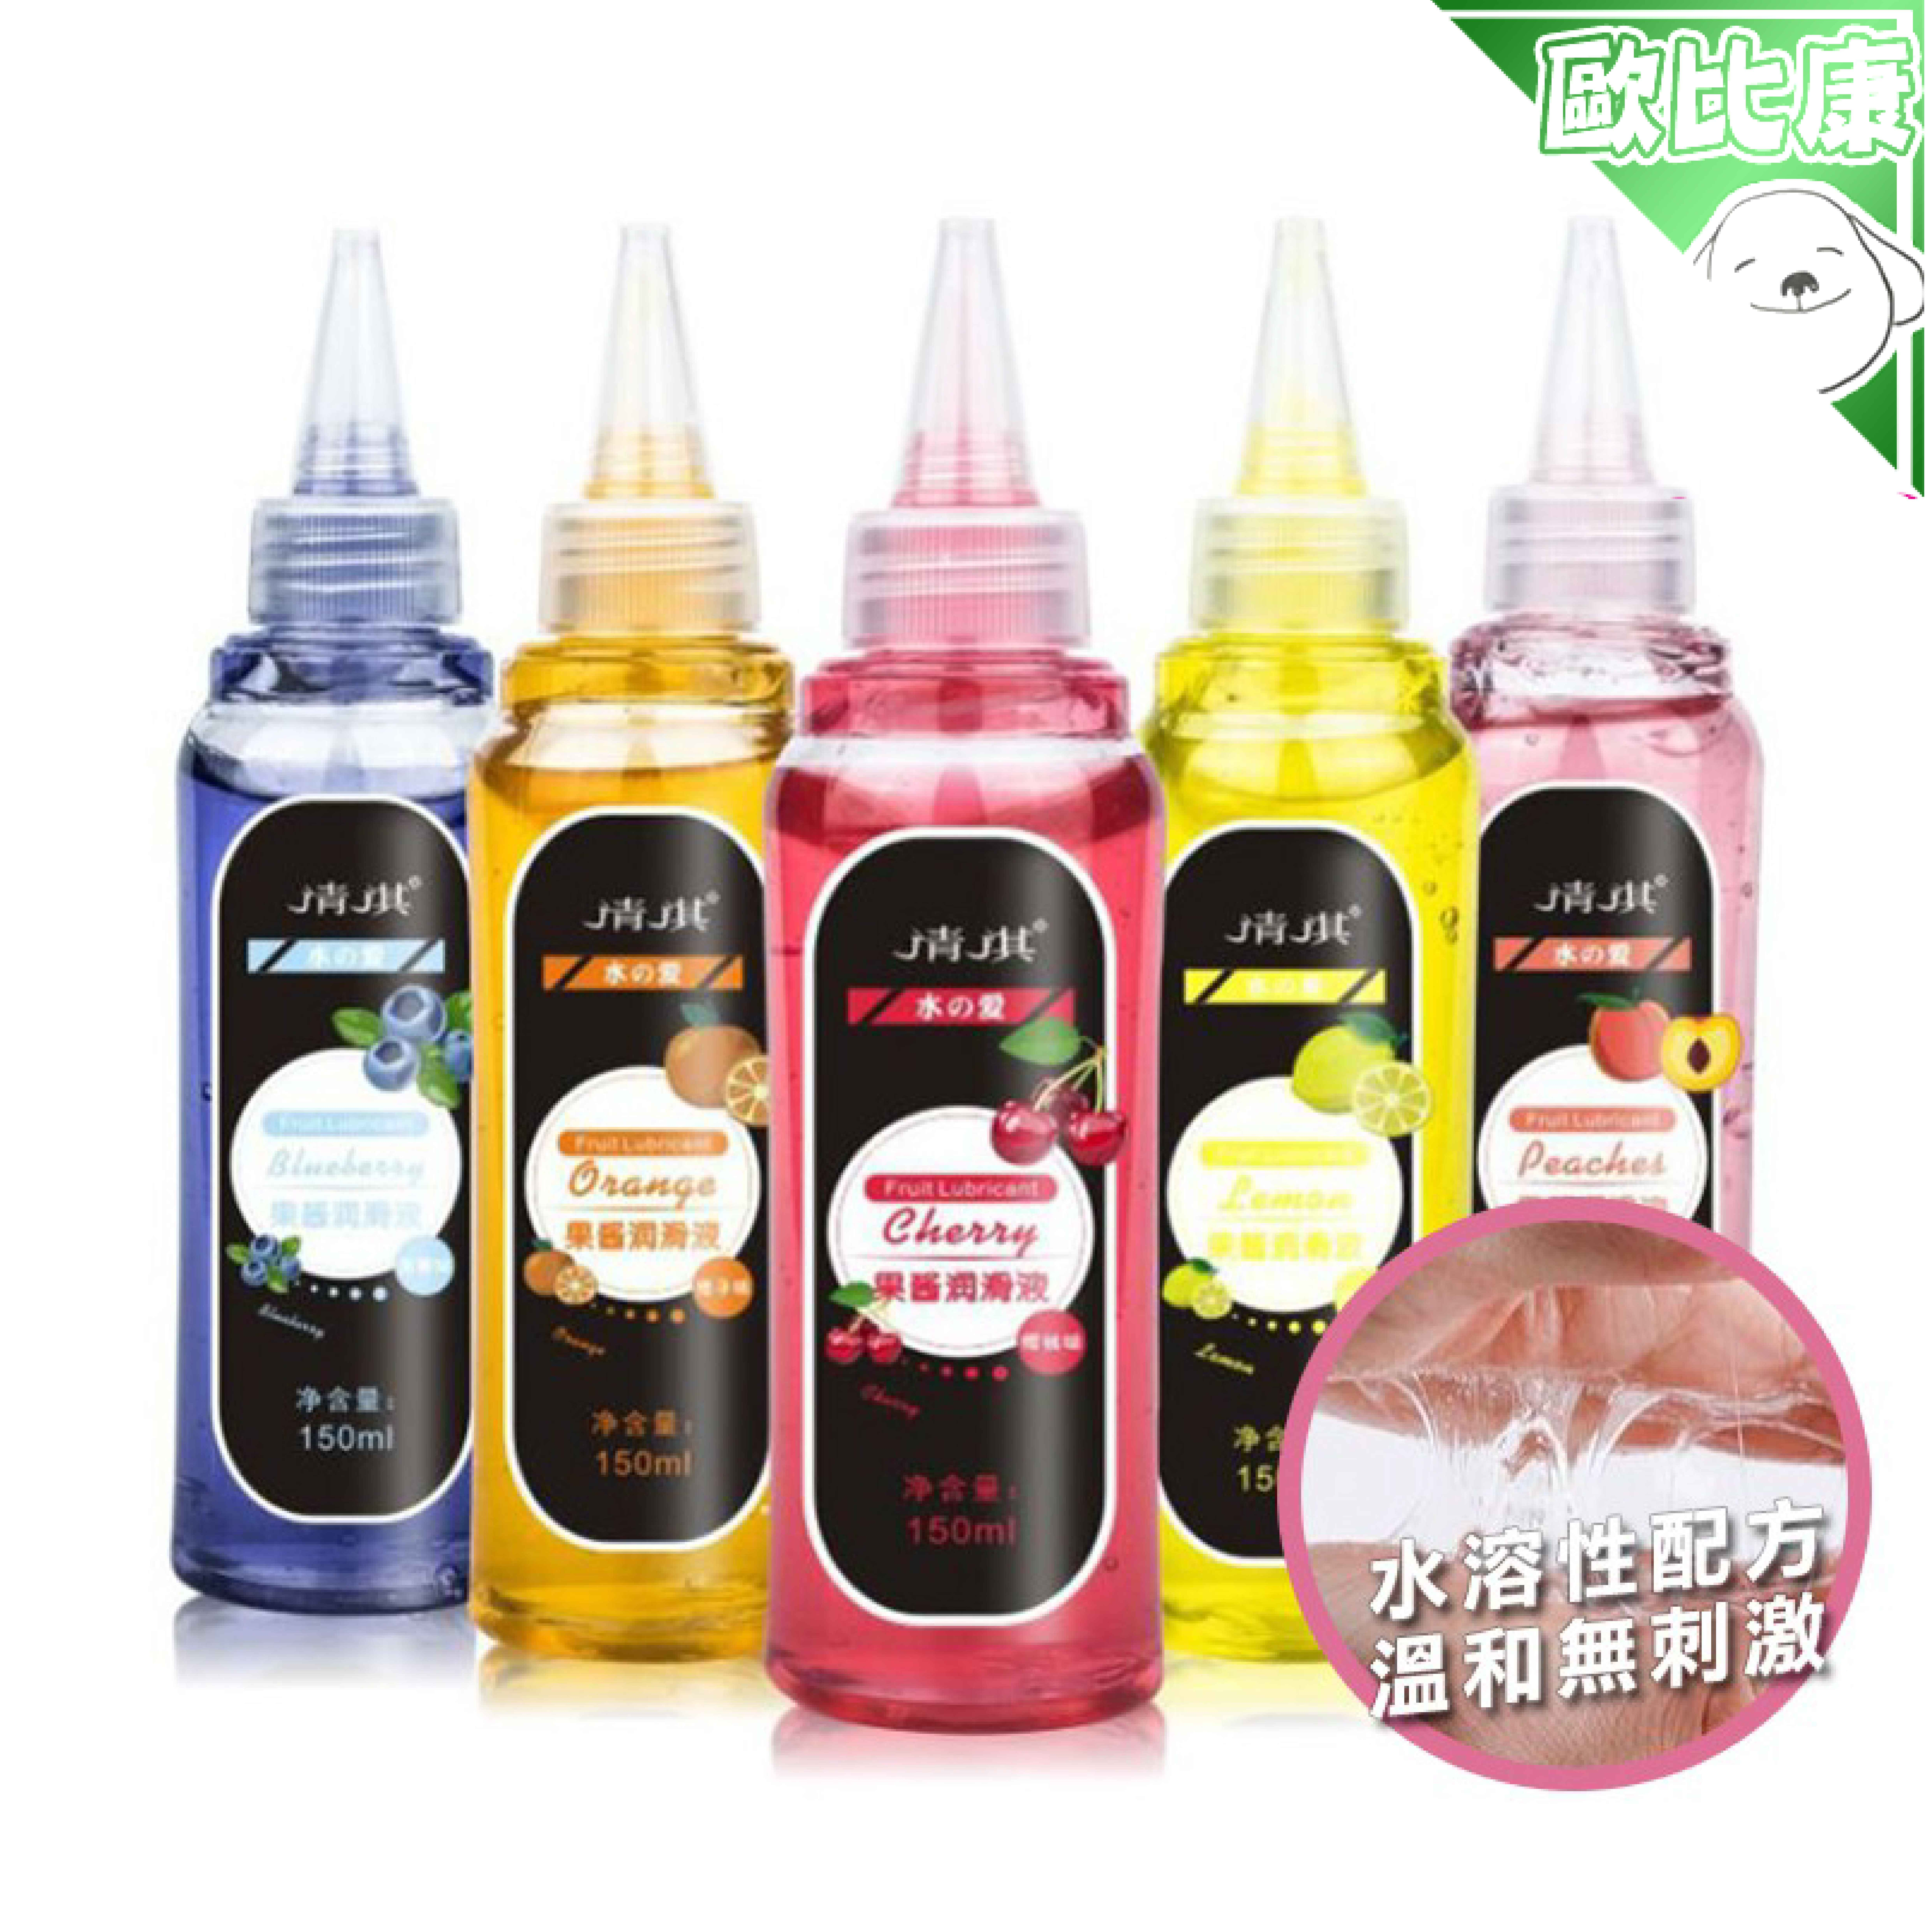 【歐比康】 果香潤滑油150ML 隨機1入 果醬潤滑劑 潤滑液 潤滑油 情趣用品 附發票